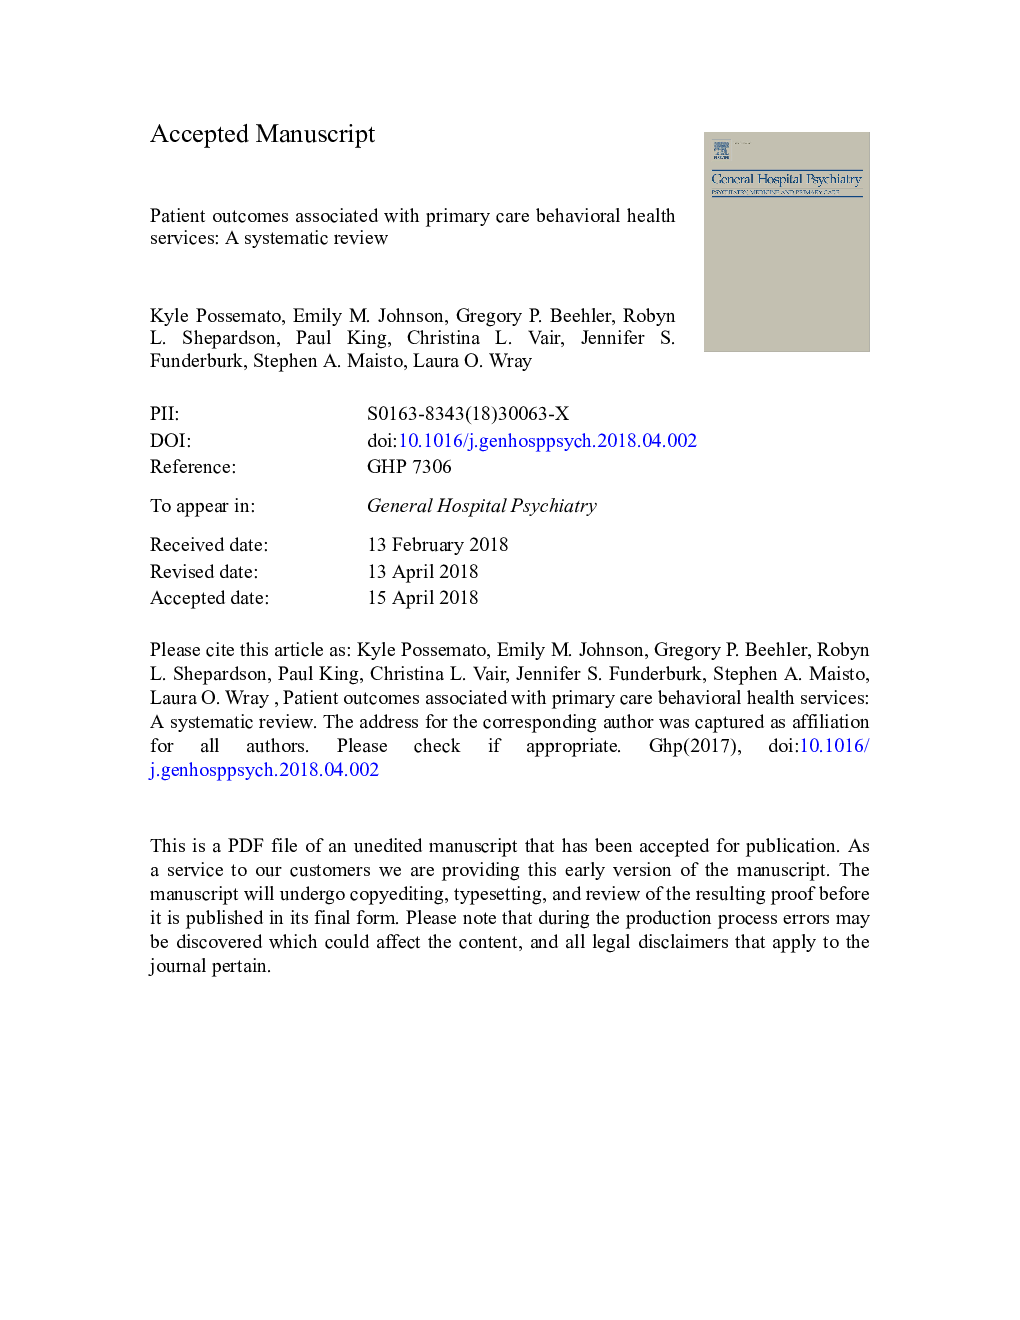 نتایج بیمار در ارتباط با مراقبت های بهداشتی اولیه خدمات مراقبت های بهداشتی: بررسی سیستماتیک 